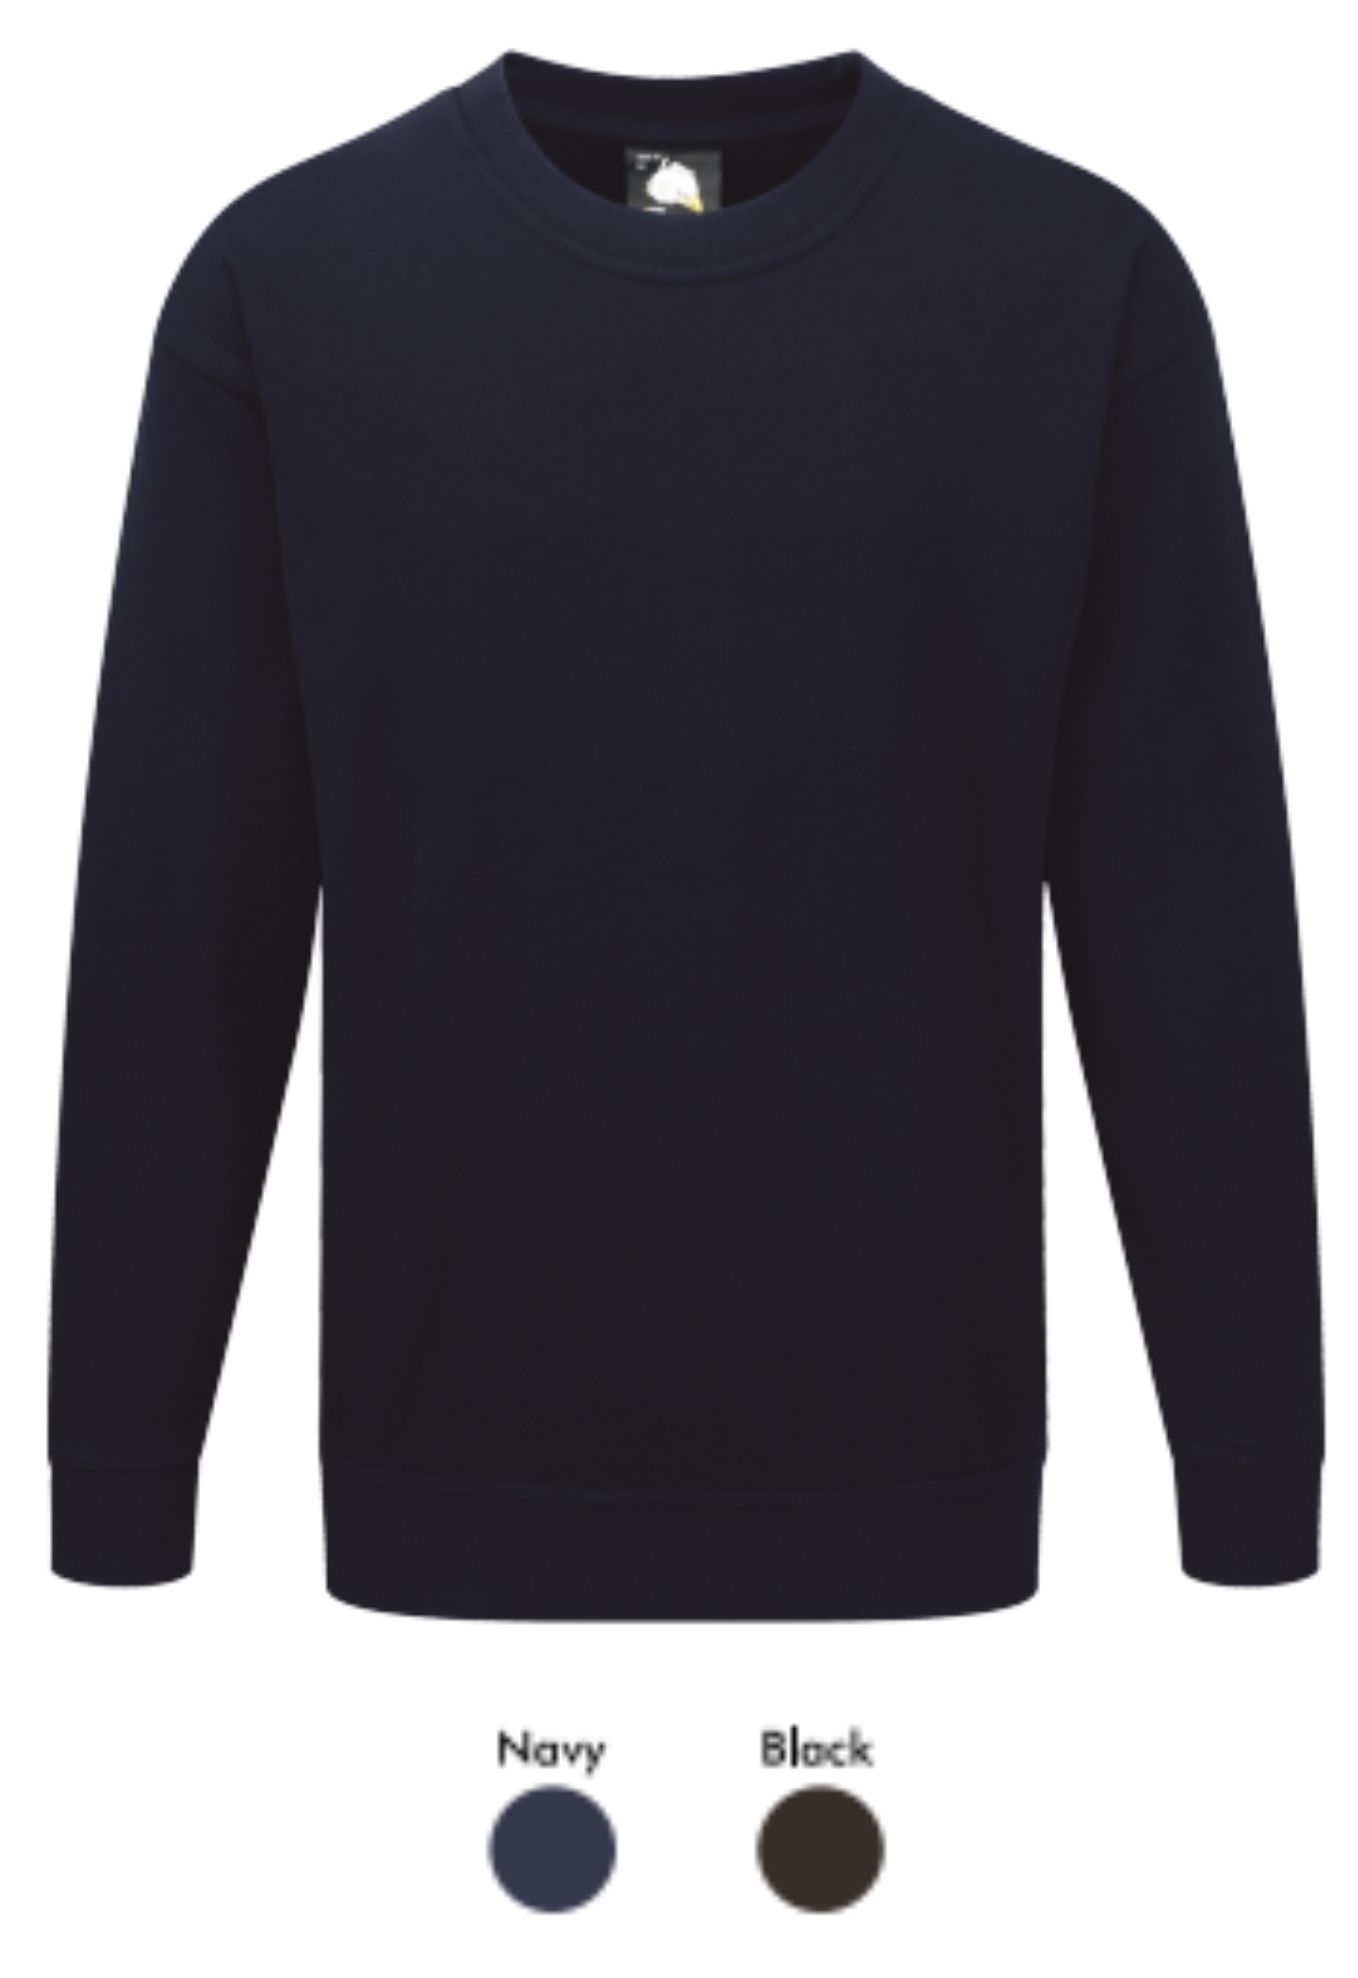 Orn 1255 Seagull 100% cotton Sweatshirt